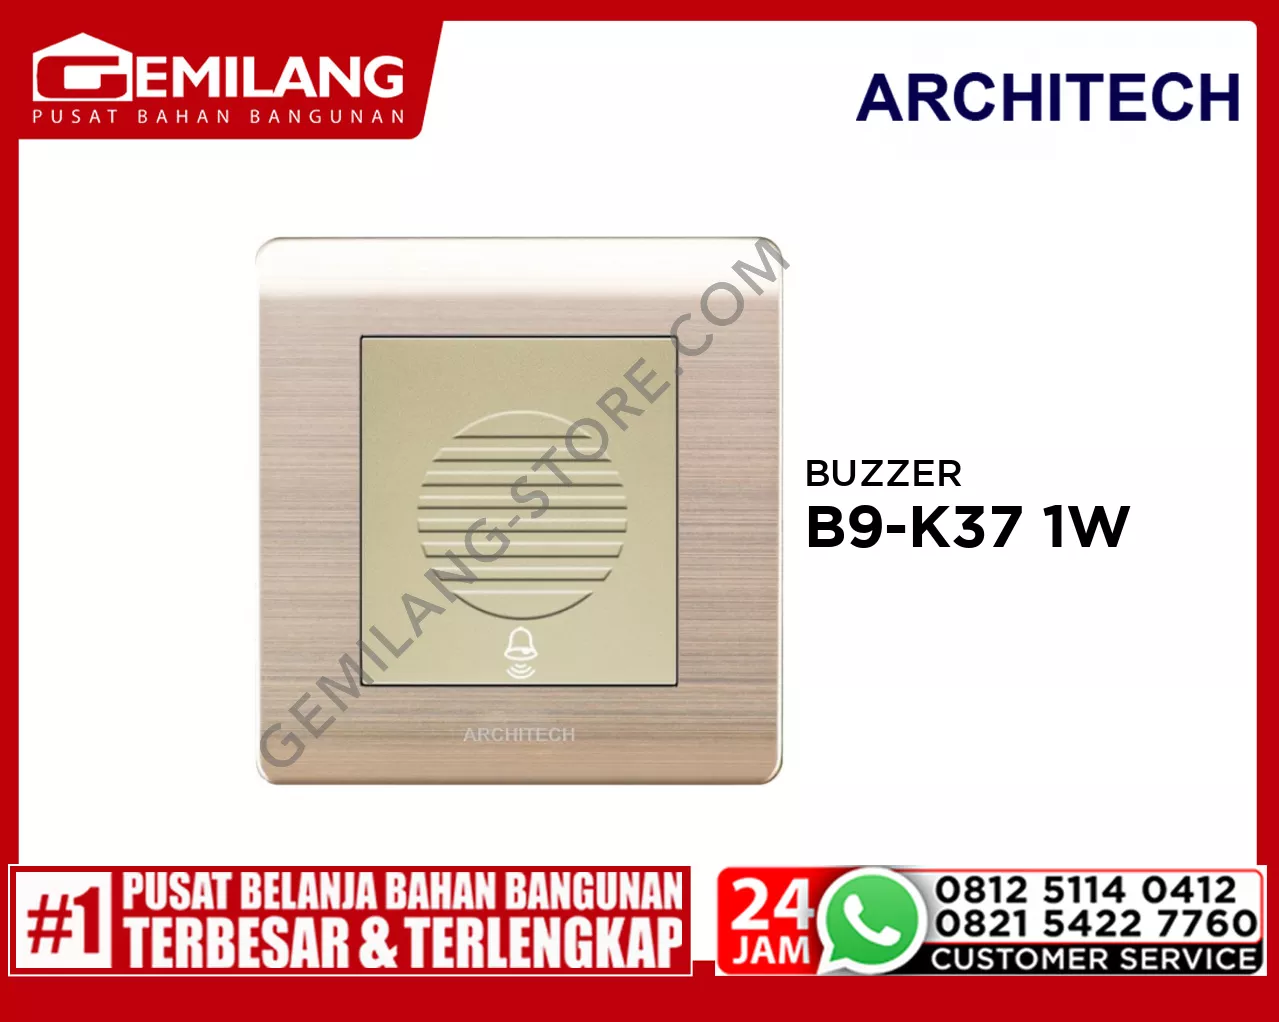 ARCHITECH BUZZER PLATINUM GD B9-K37 1W